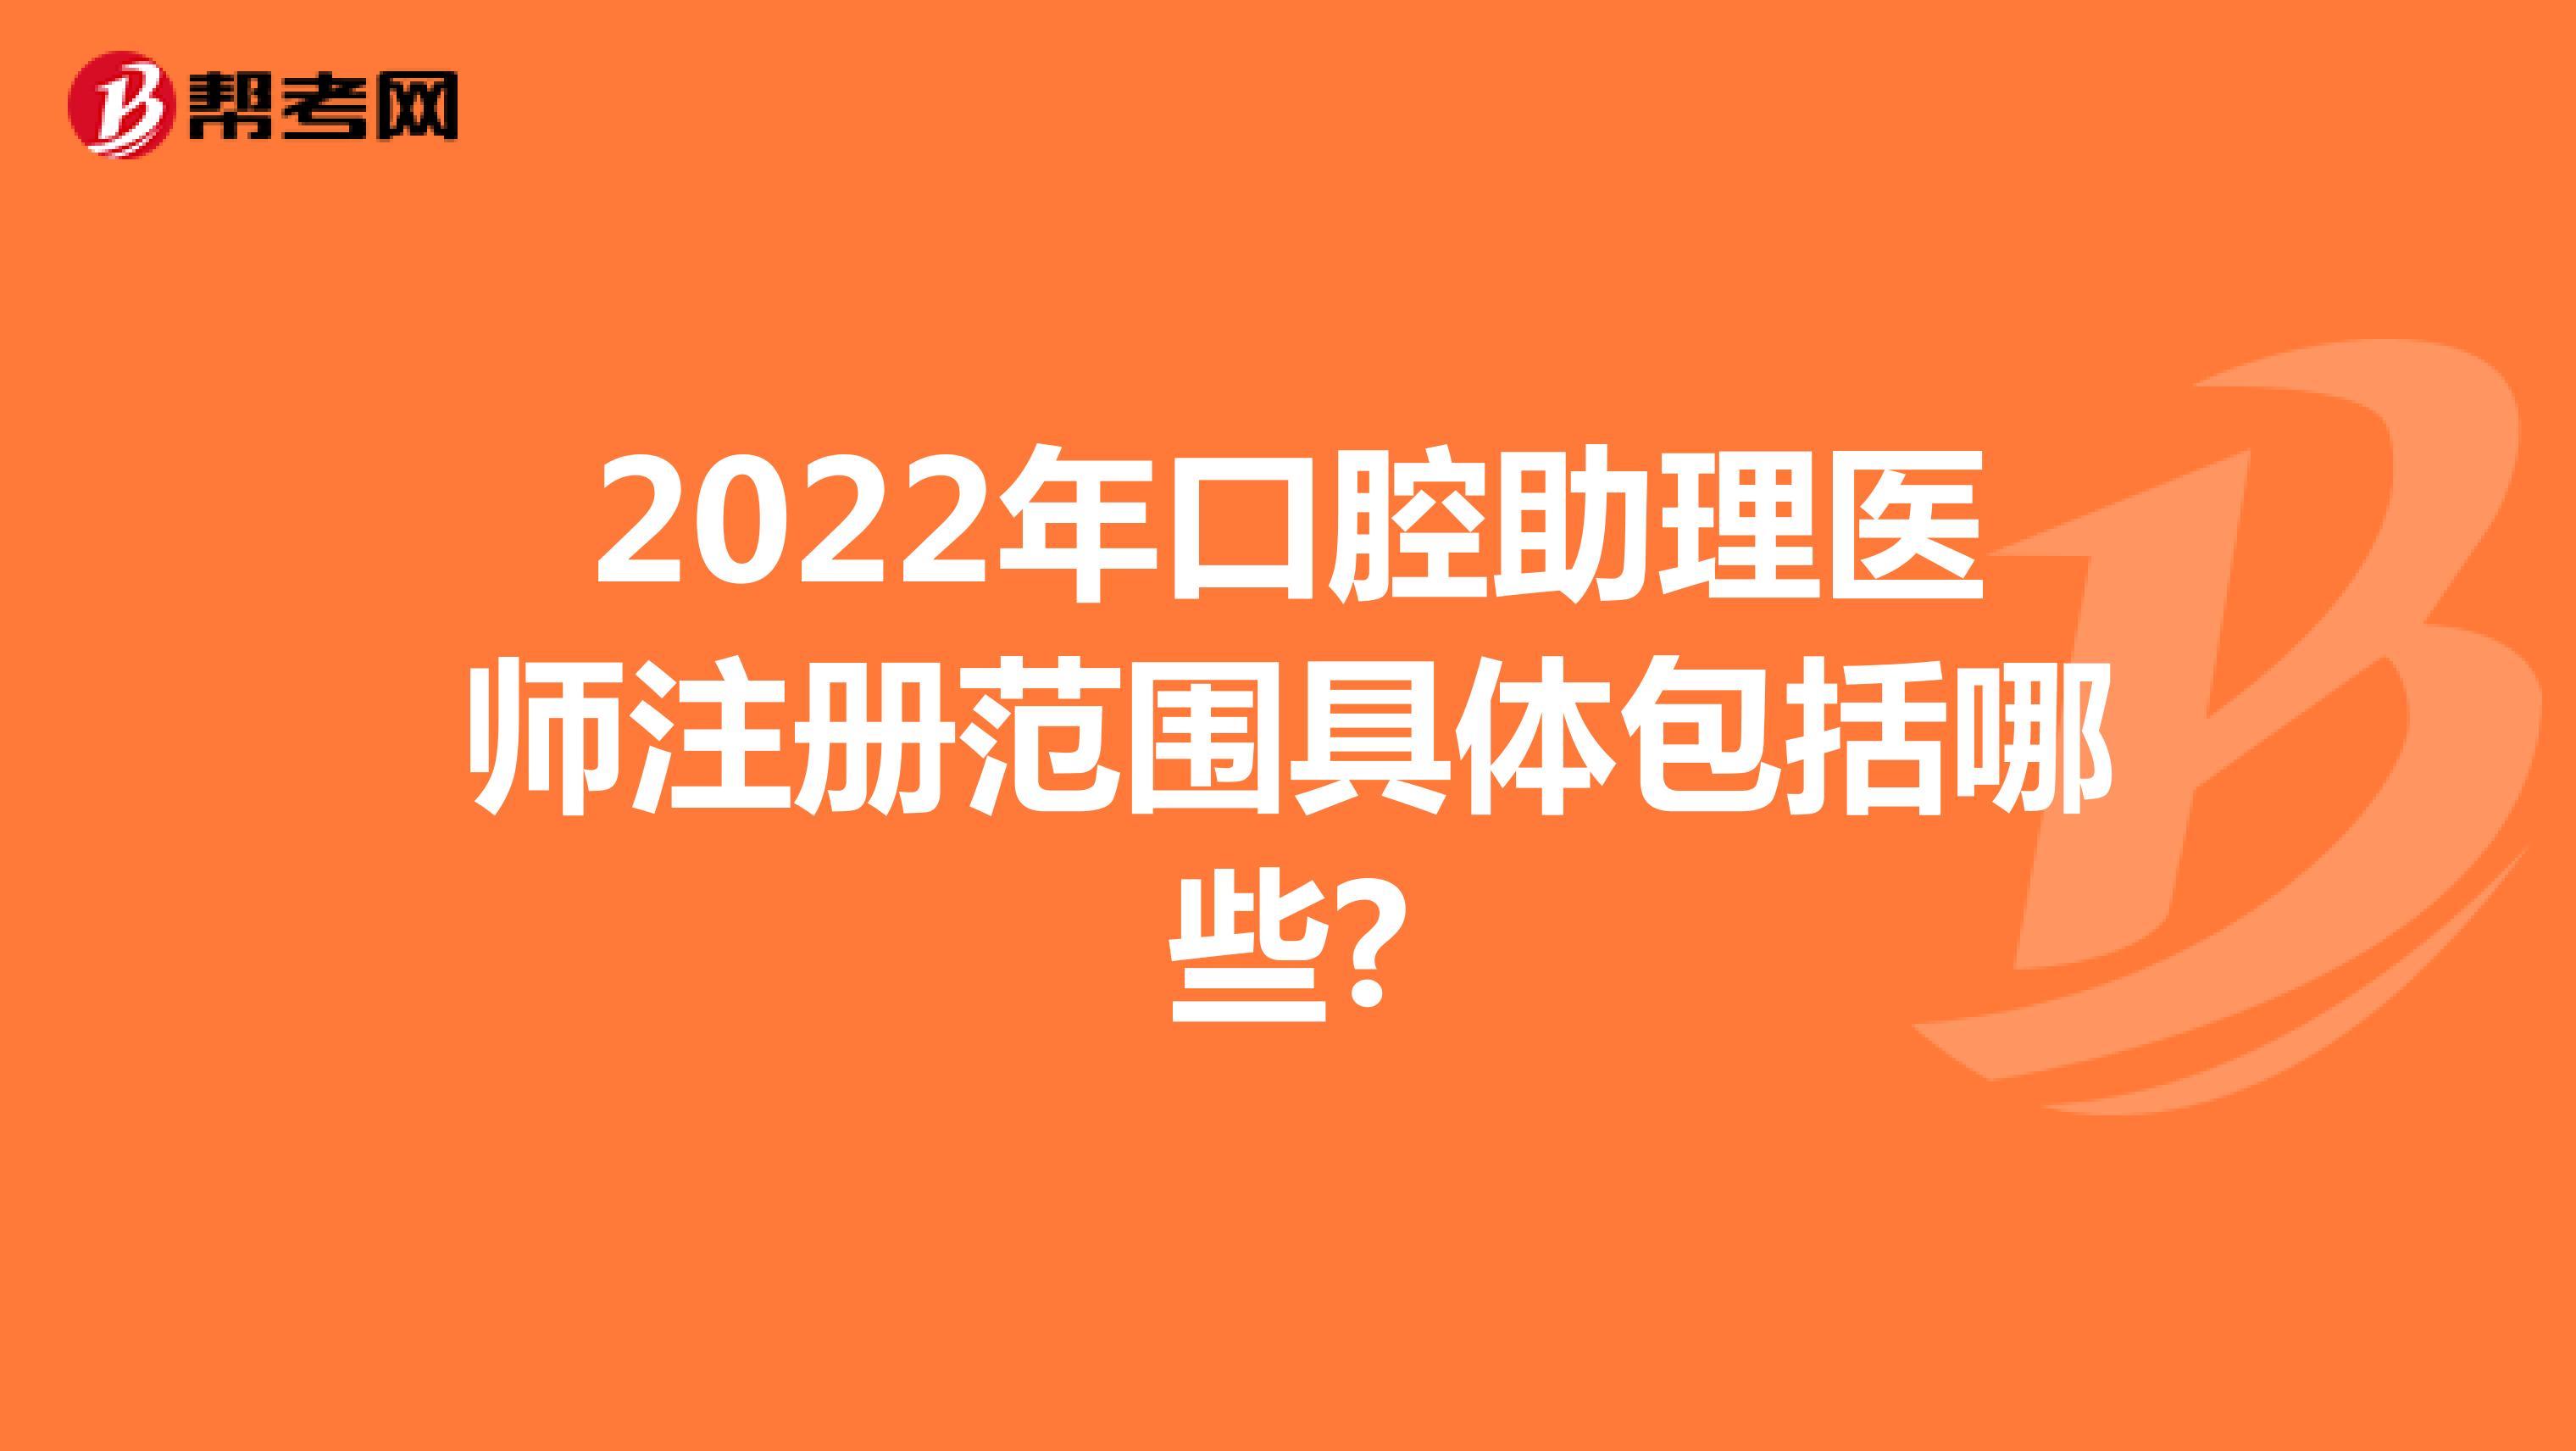 2022年口腔助理医师注册范围具体包括哪些?